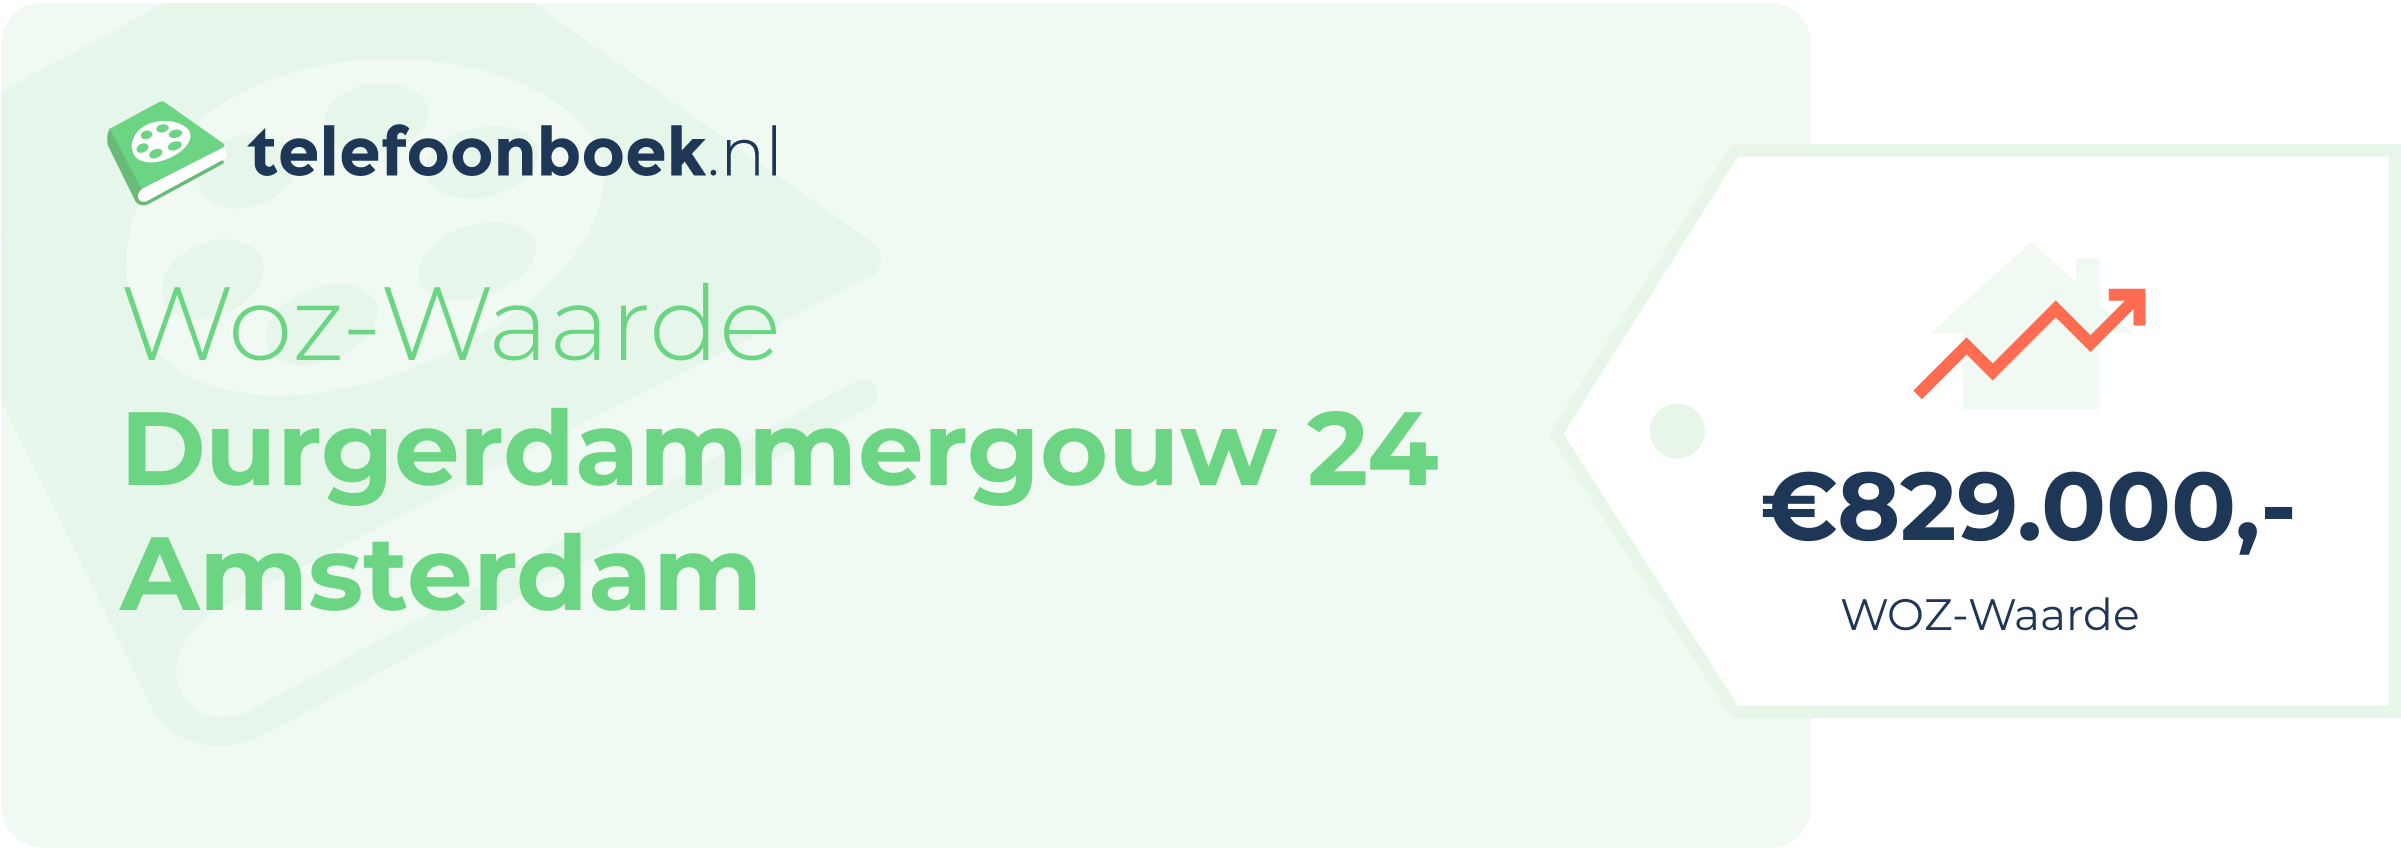 WOZ-waarde Durgerdammergouw 24 Amsterdam